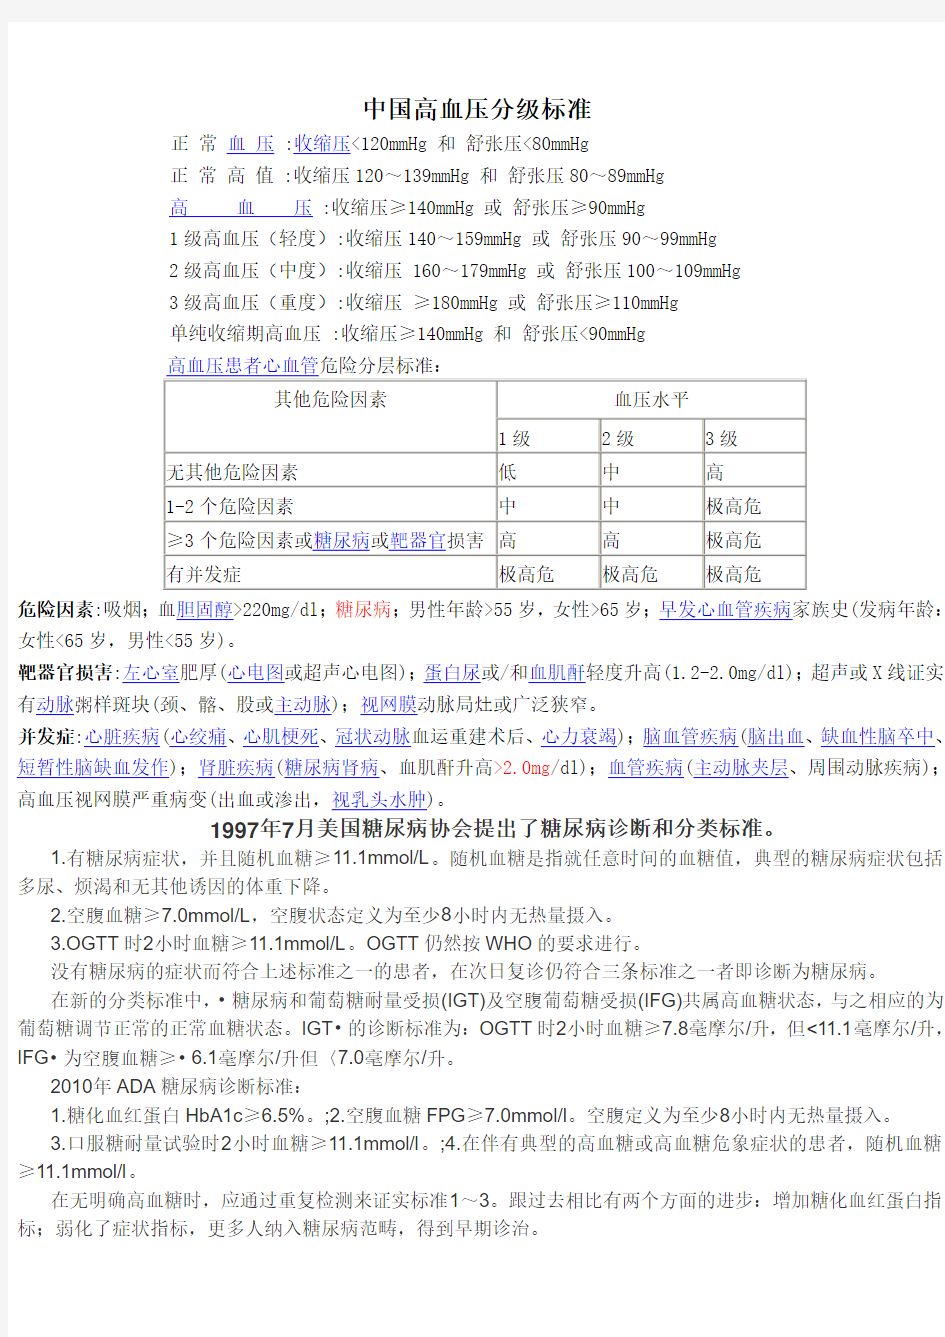 中国高血压分级及糖尿病诊断标准